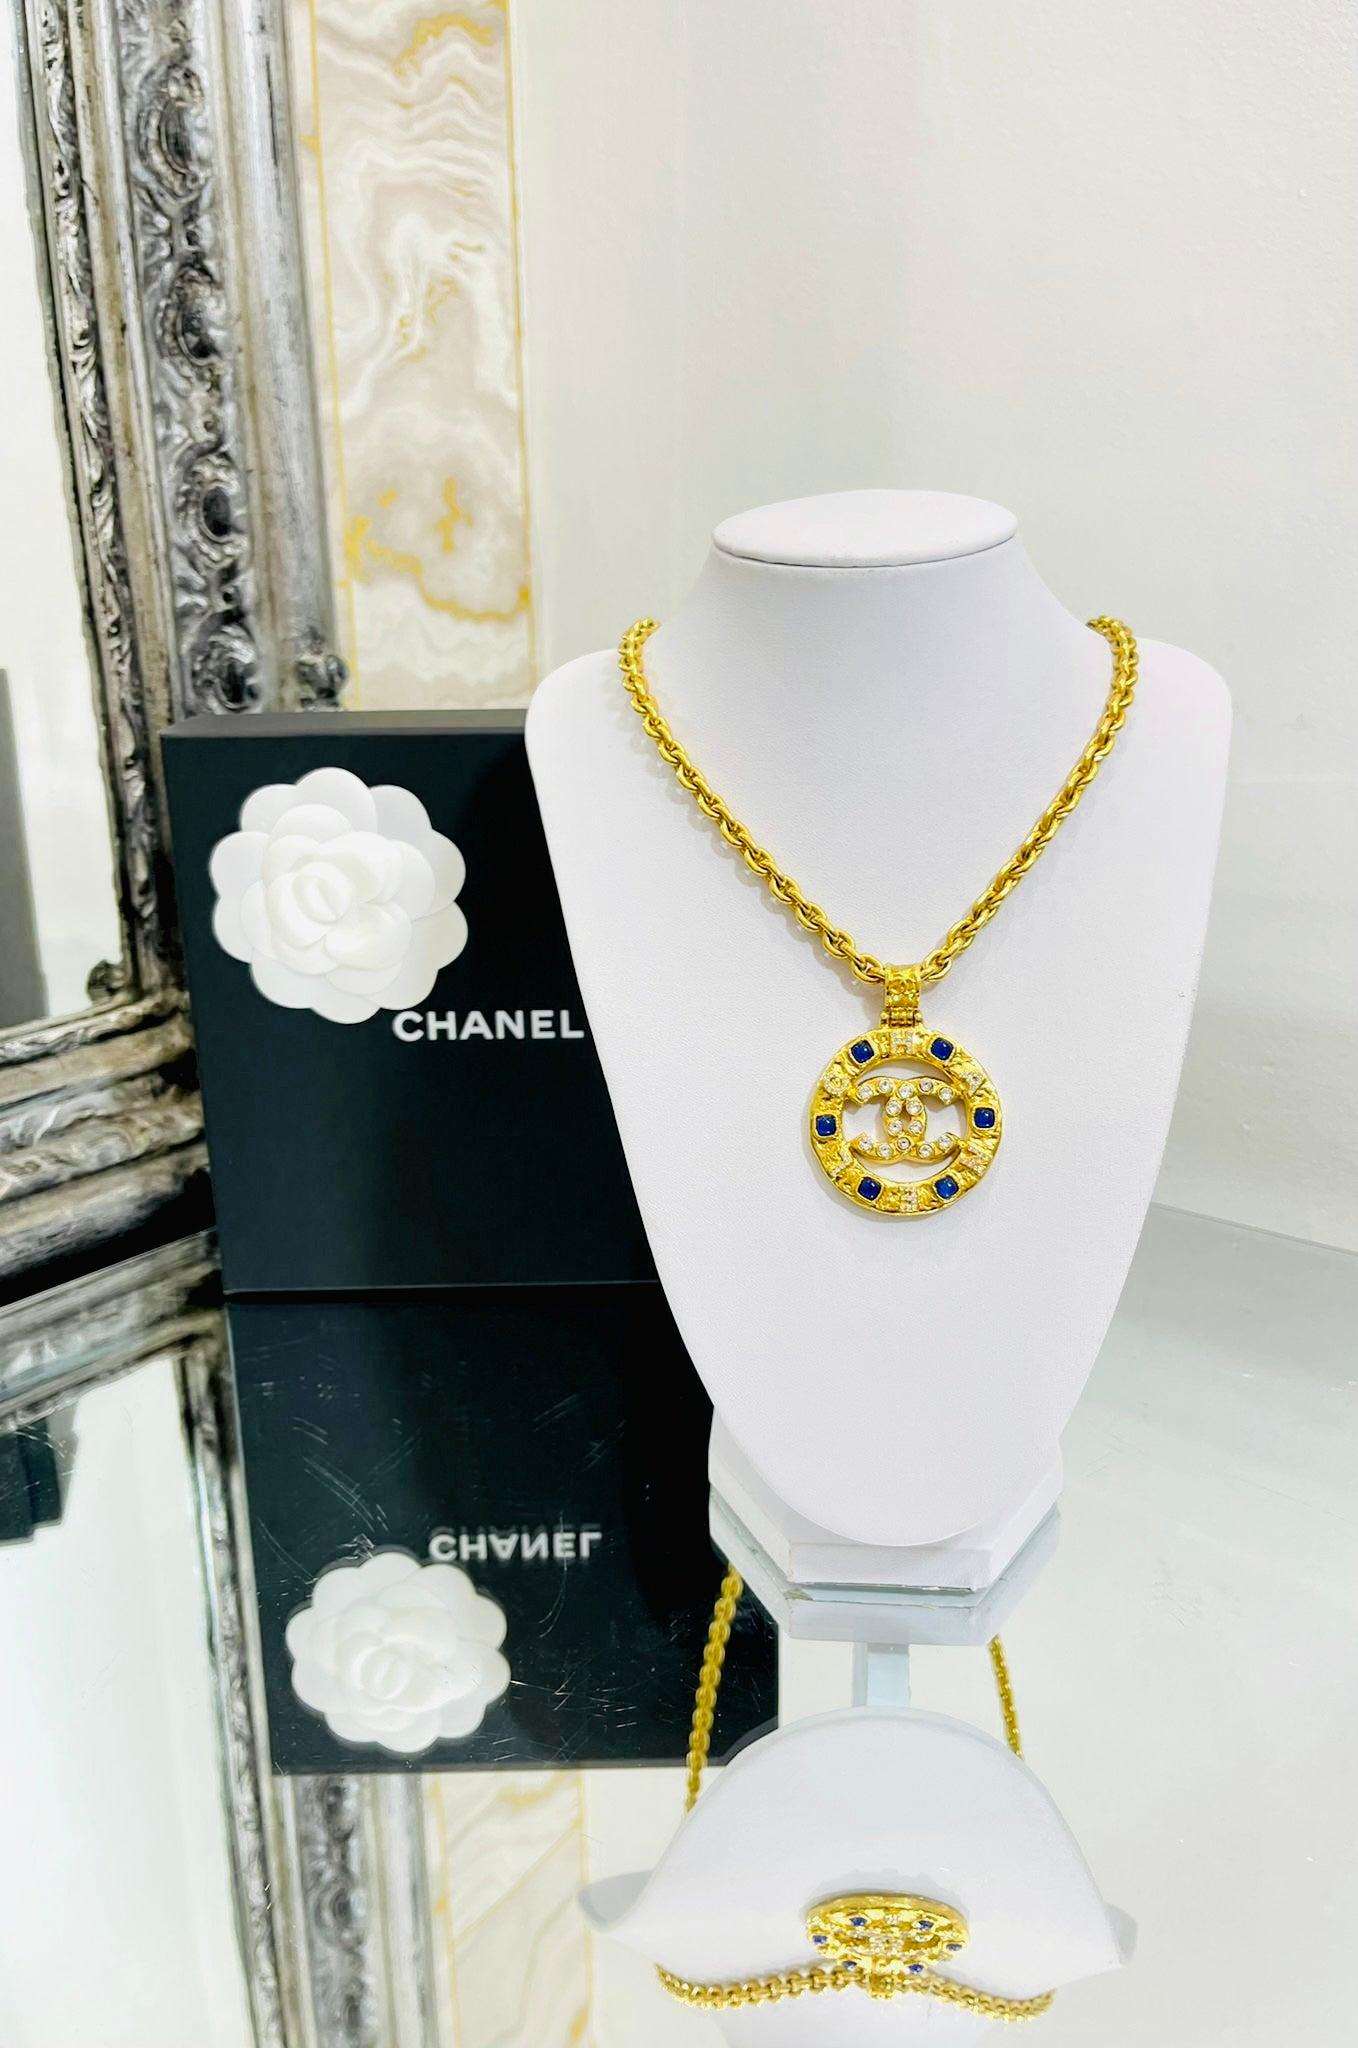 Chanel - Collier à médaillon en verre et cristal

Médaillon en or avec gripoix bleu, 